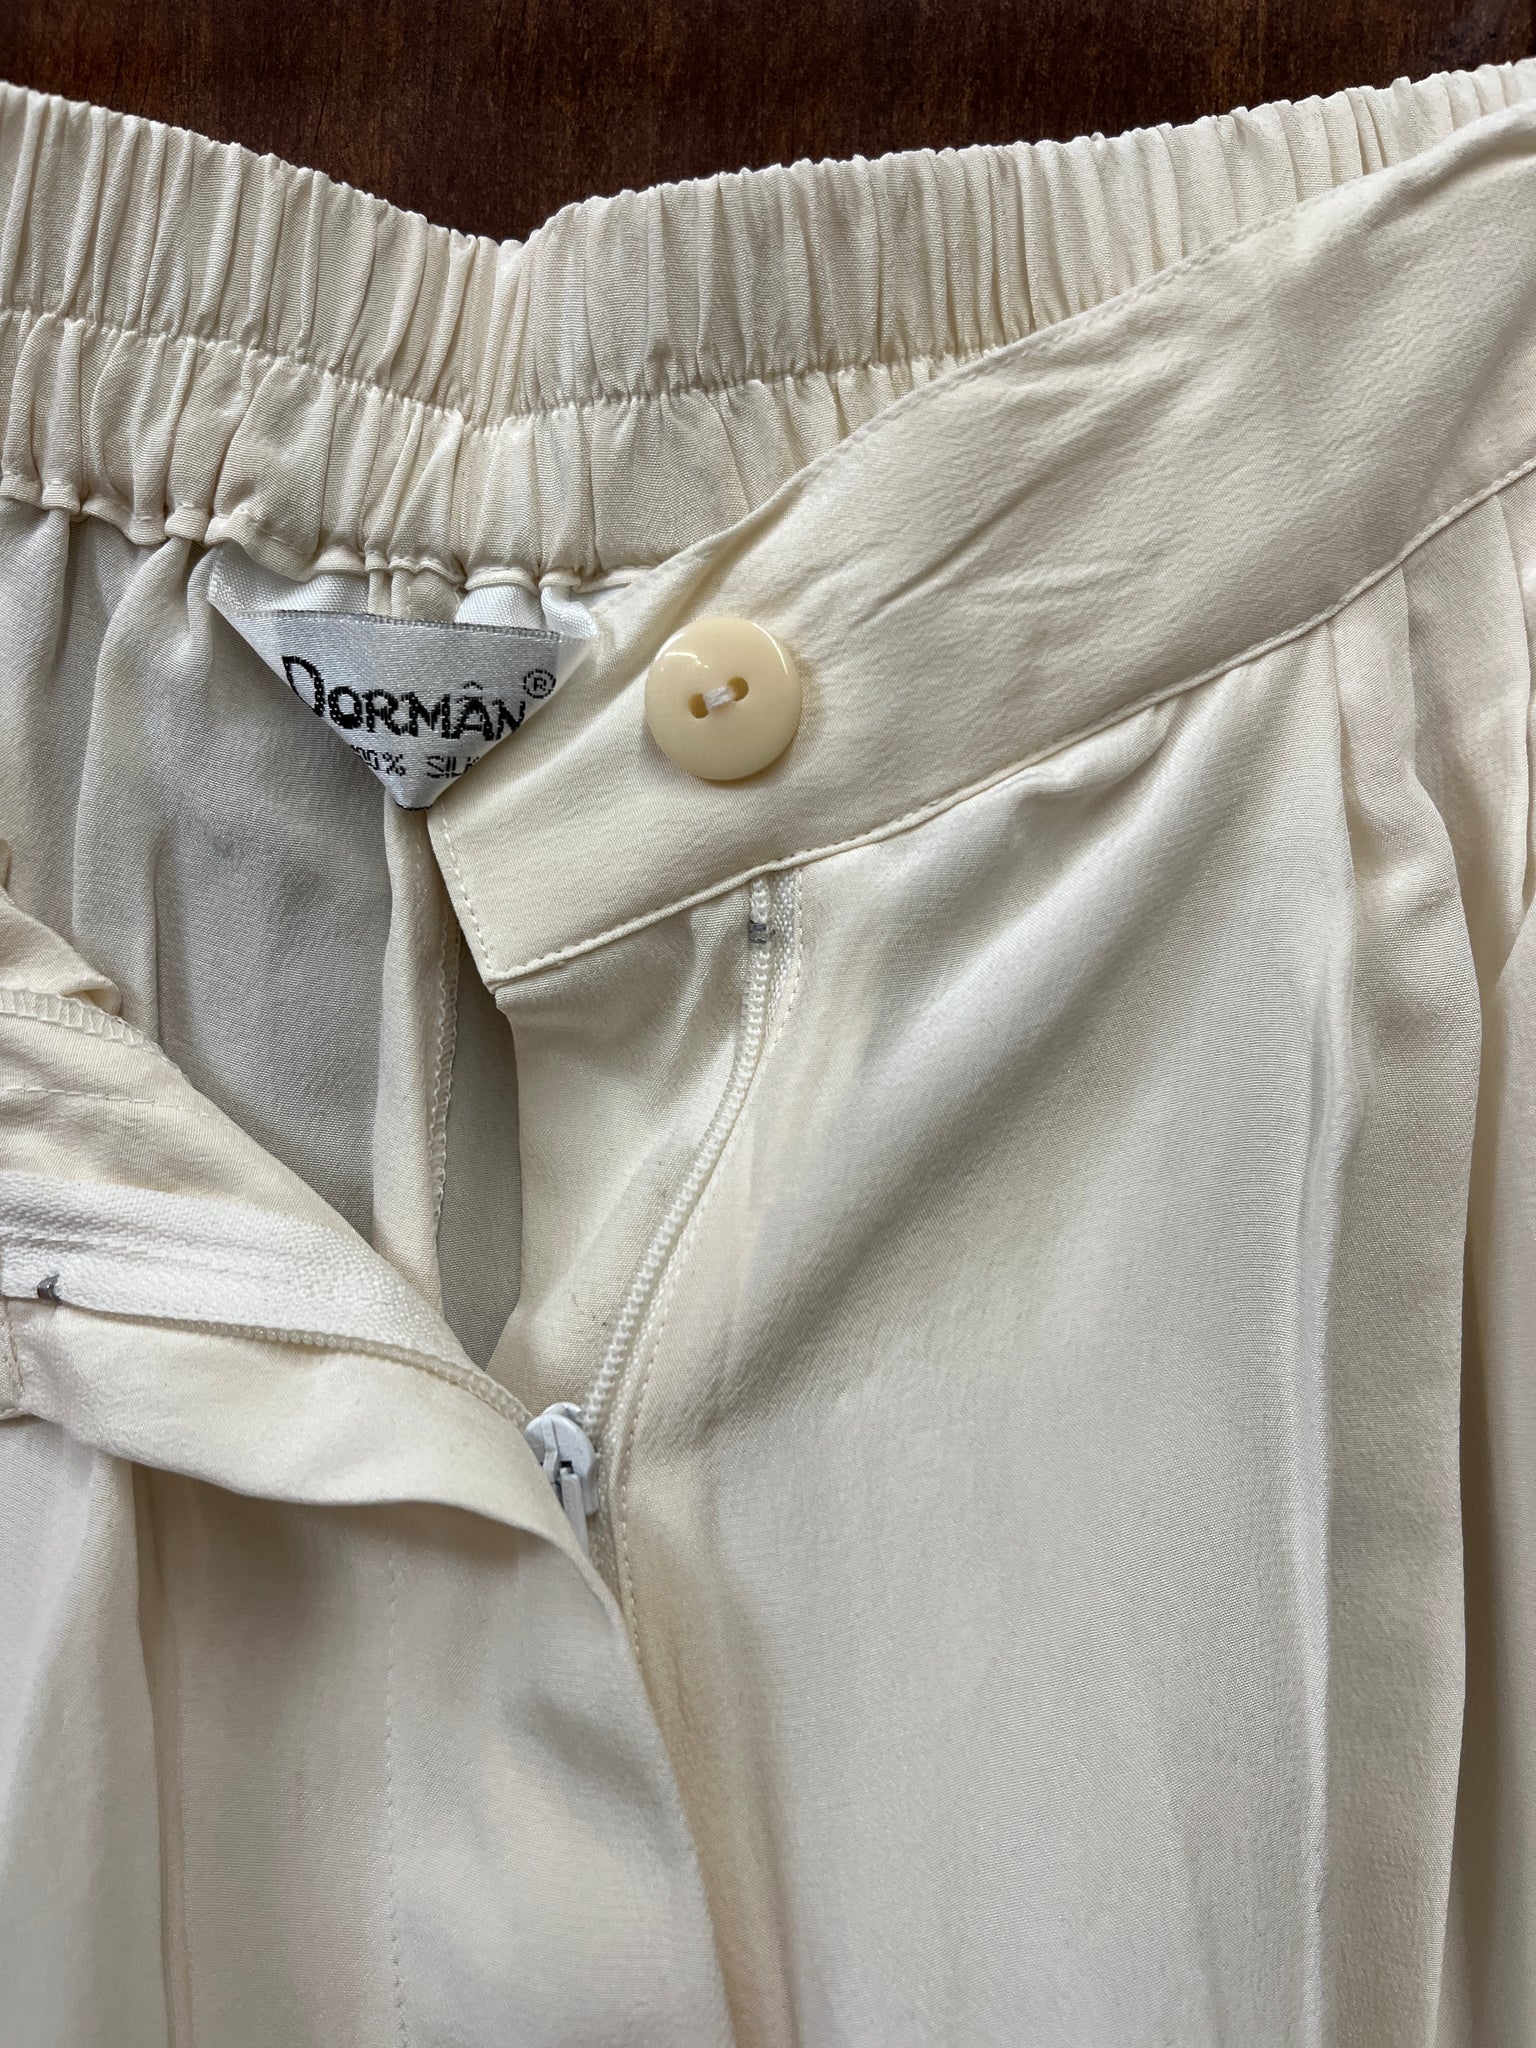 1990s SHORTS- Dorman cream silk long shorts